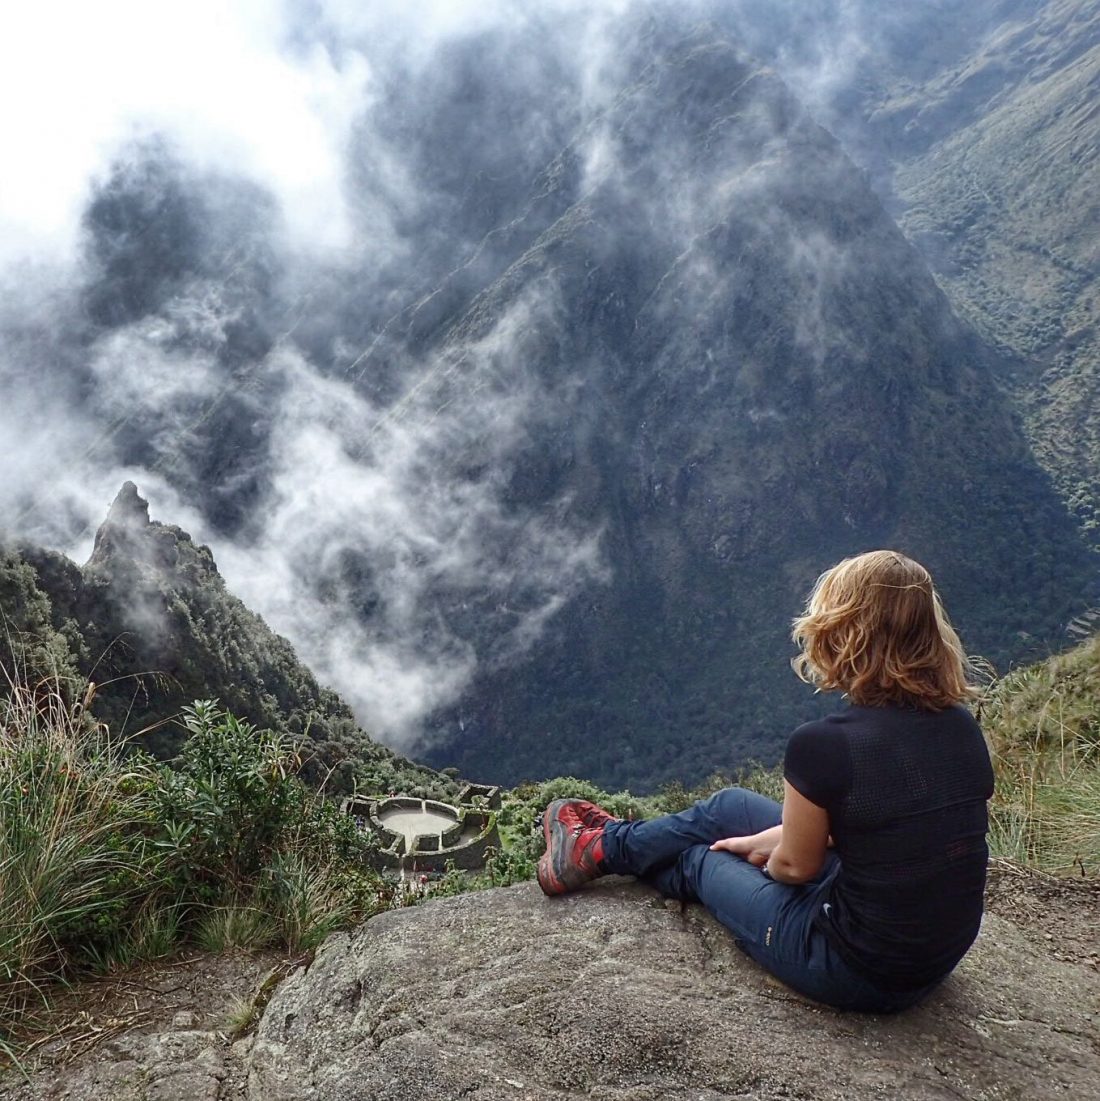 Beste uitkijk spot ever - wanderlotje - Inca Trail